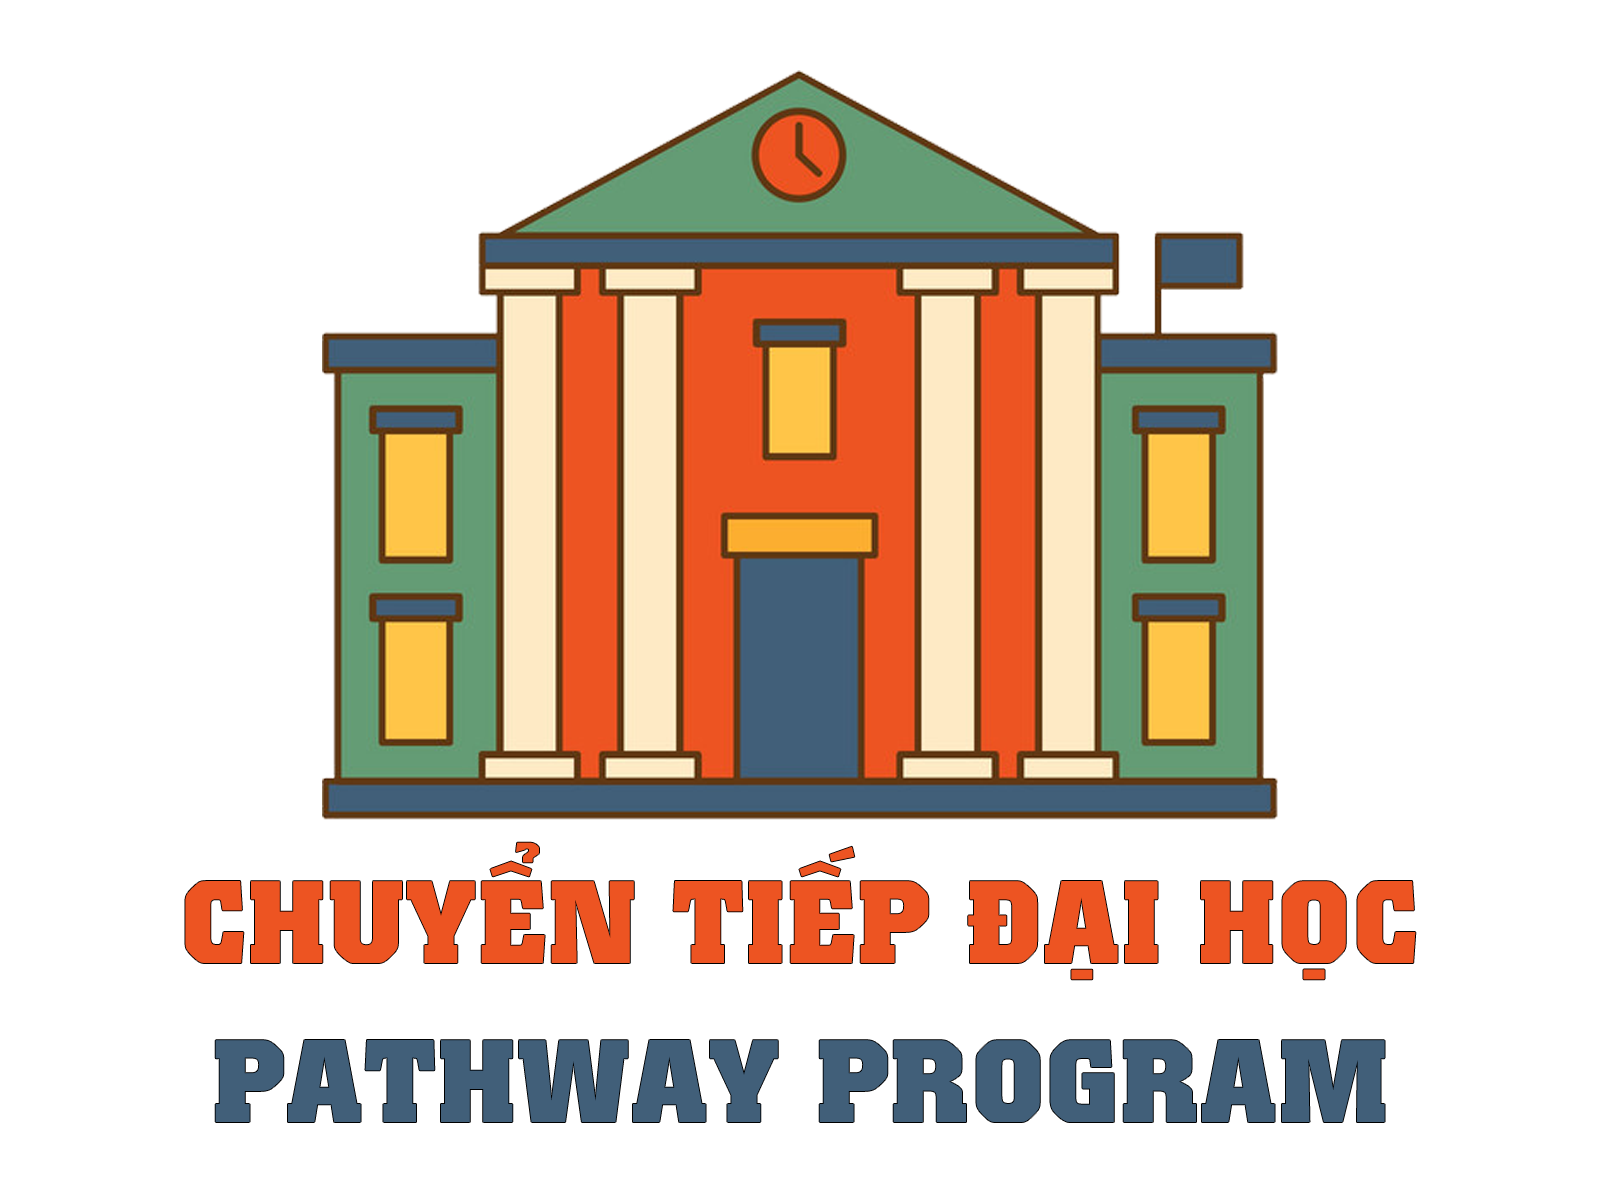 Chuyển tiếp đại học - Pathway Program